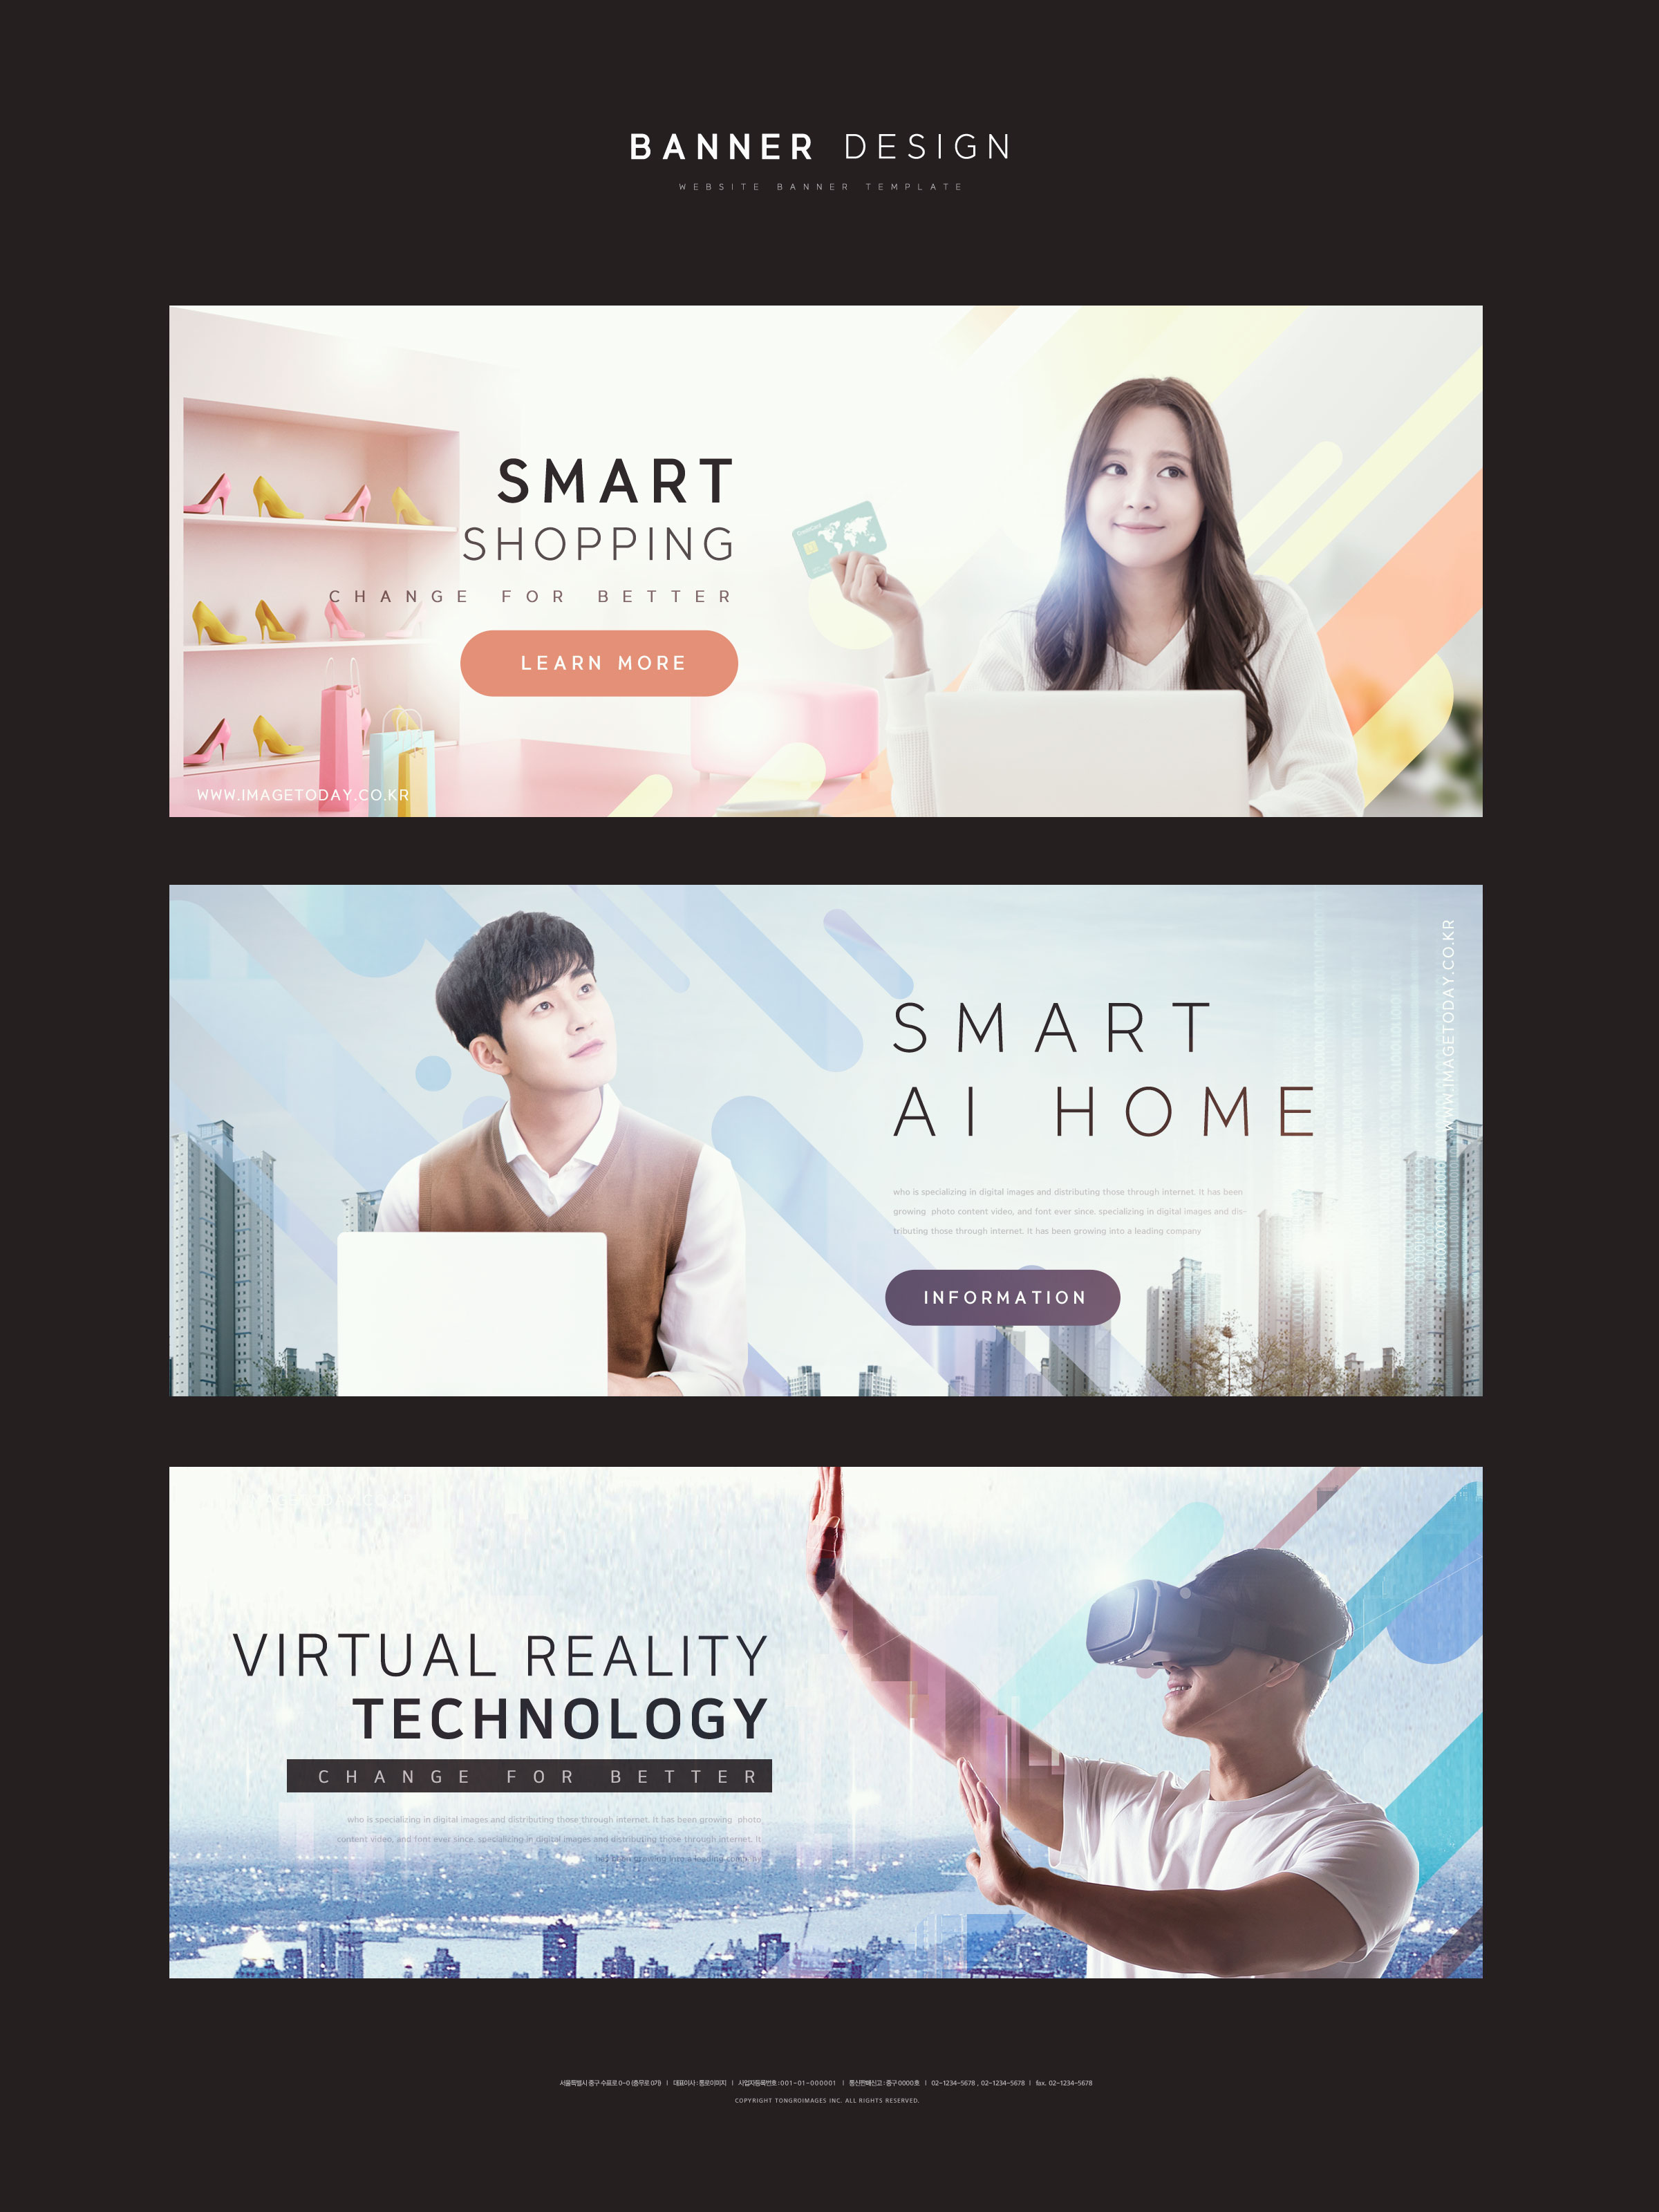 智能购物/智能AI家居/VR虚拟现实科技网站广告Banner设计插图